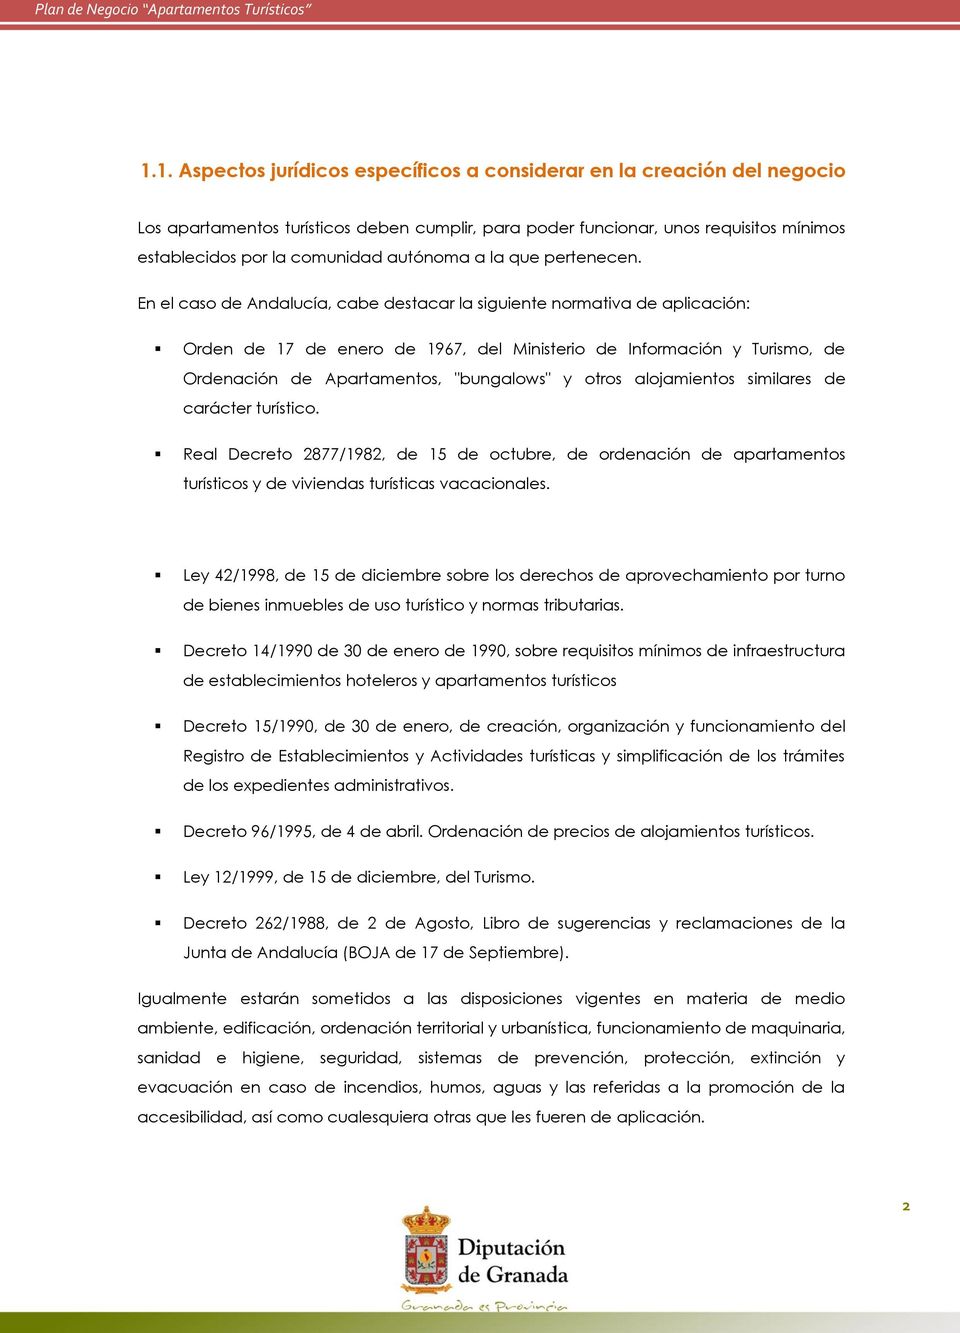 En el caso de Andalucía, cabe destacar la siguiente normativa de aplicación: Orden de 17 de enero de 1967, del Ministerio de Información y Turismo, de Ordenación de Apartamentos, "bungalows" y otros